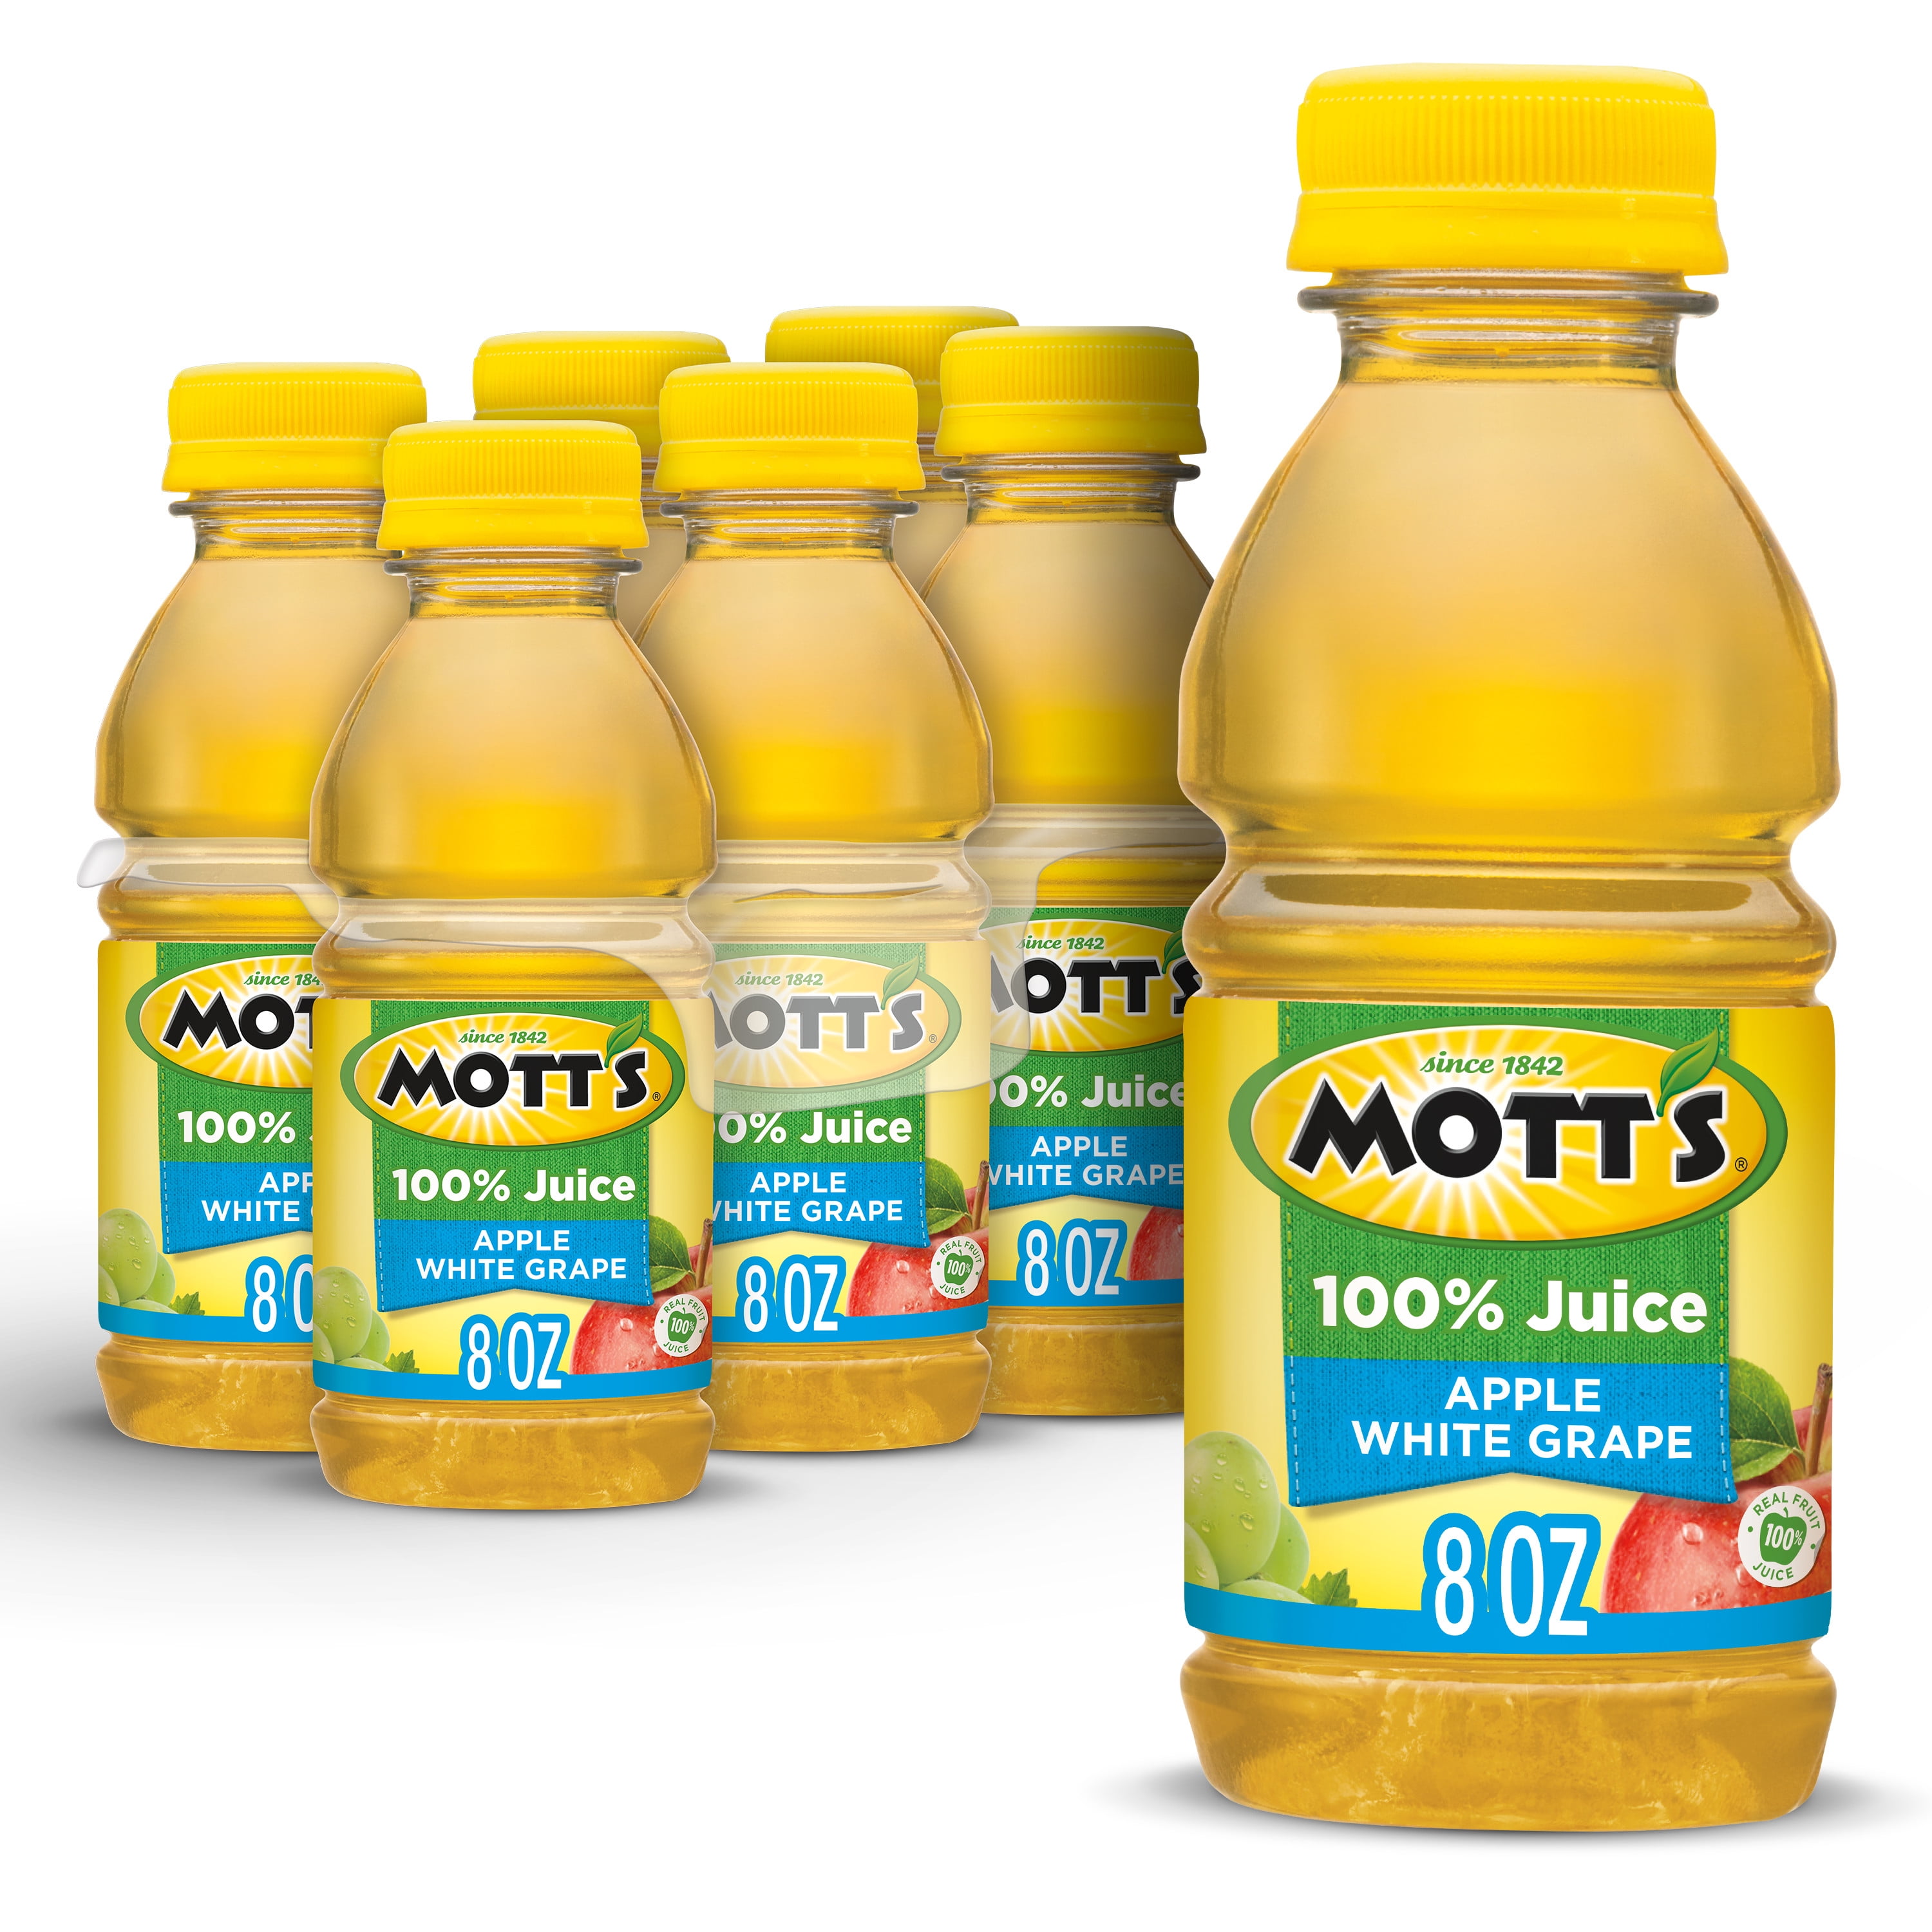 Mott's 100% Apple White Grape Juice, 8 fl oz bottles, 6 pack